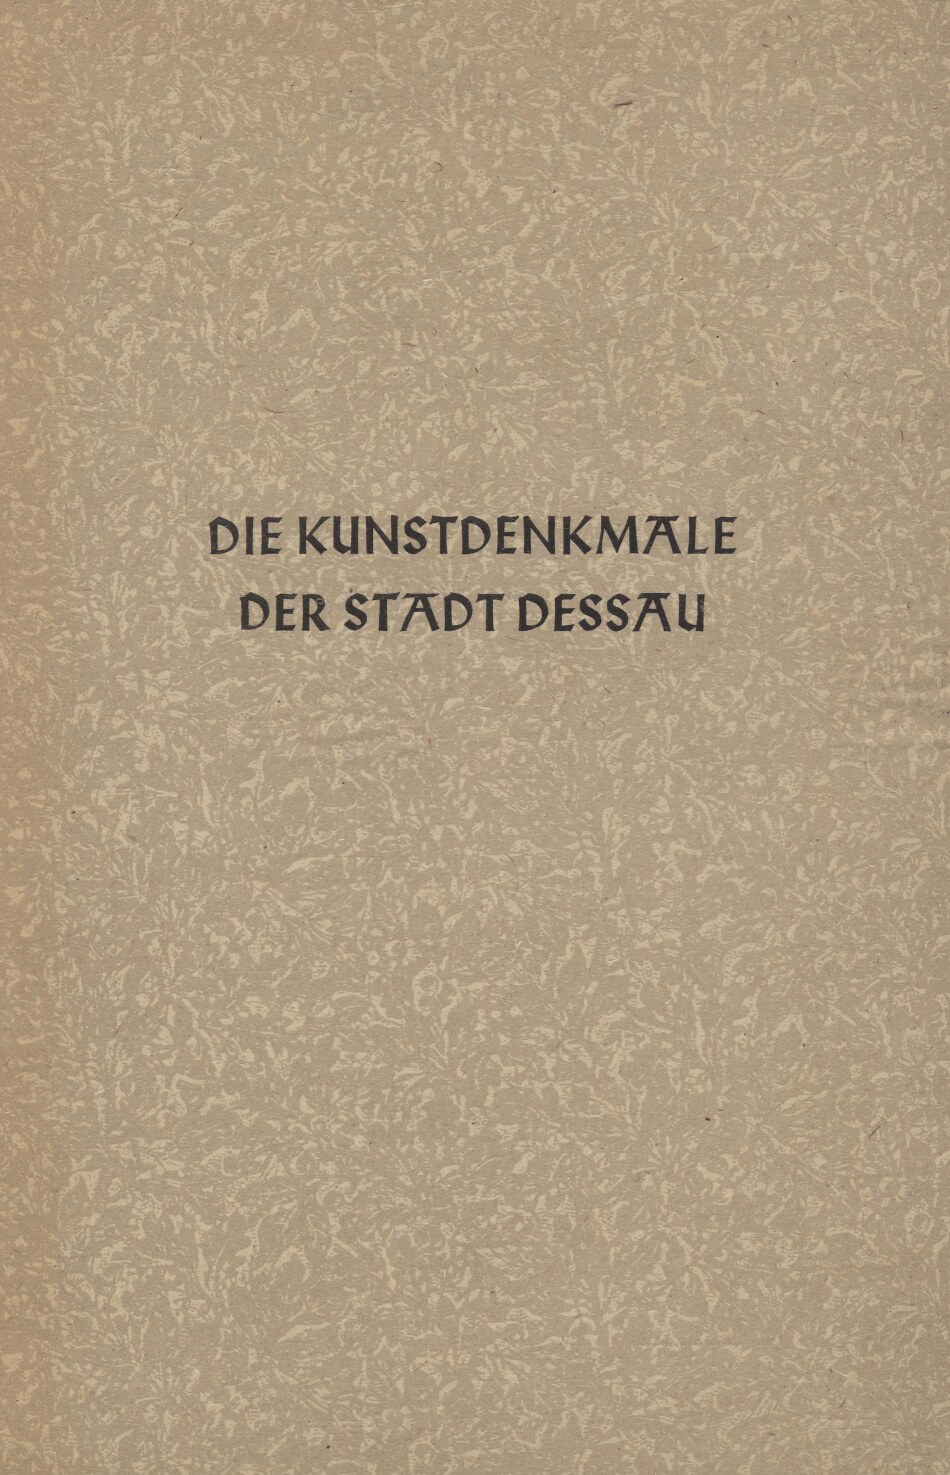 Die Kunstdenkmale der Stadt Dessau (1937, 250 S., Scan, Fraktur)